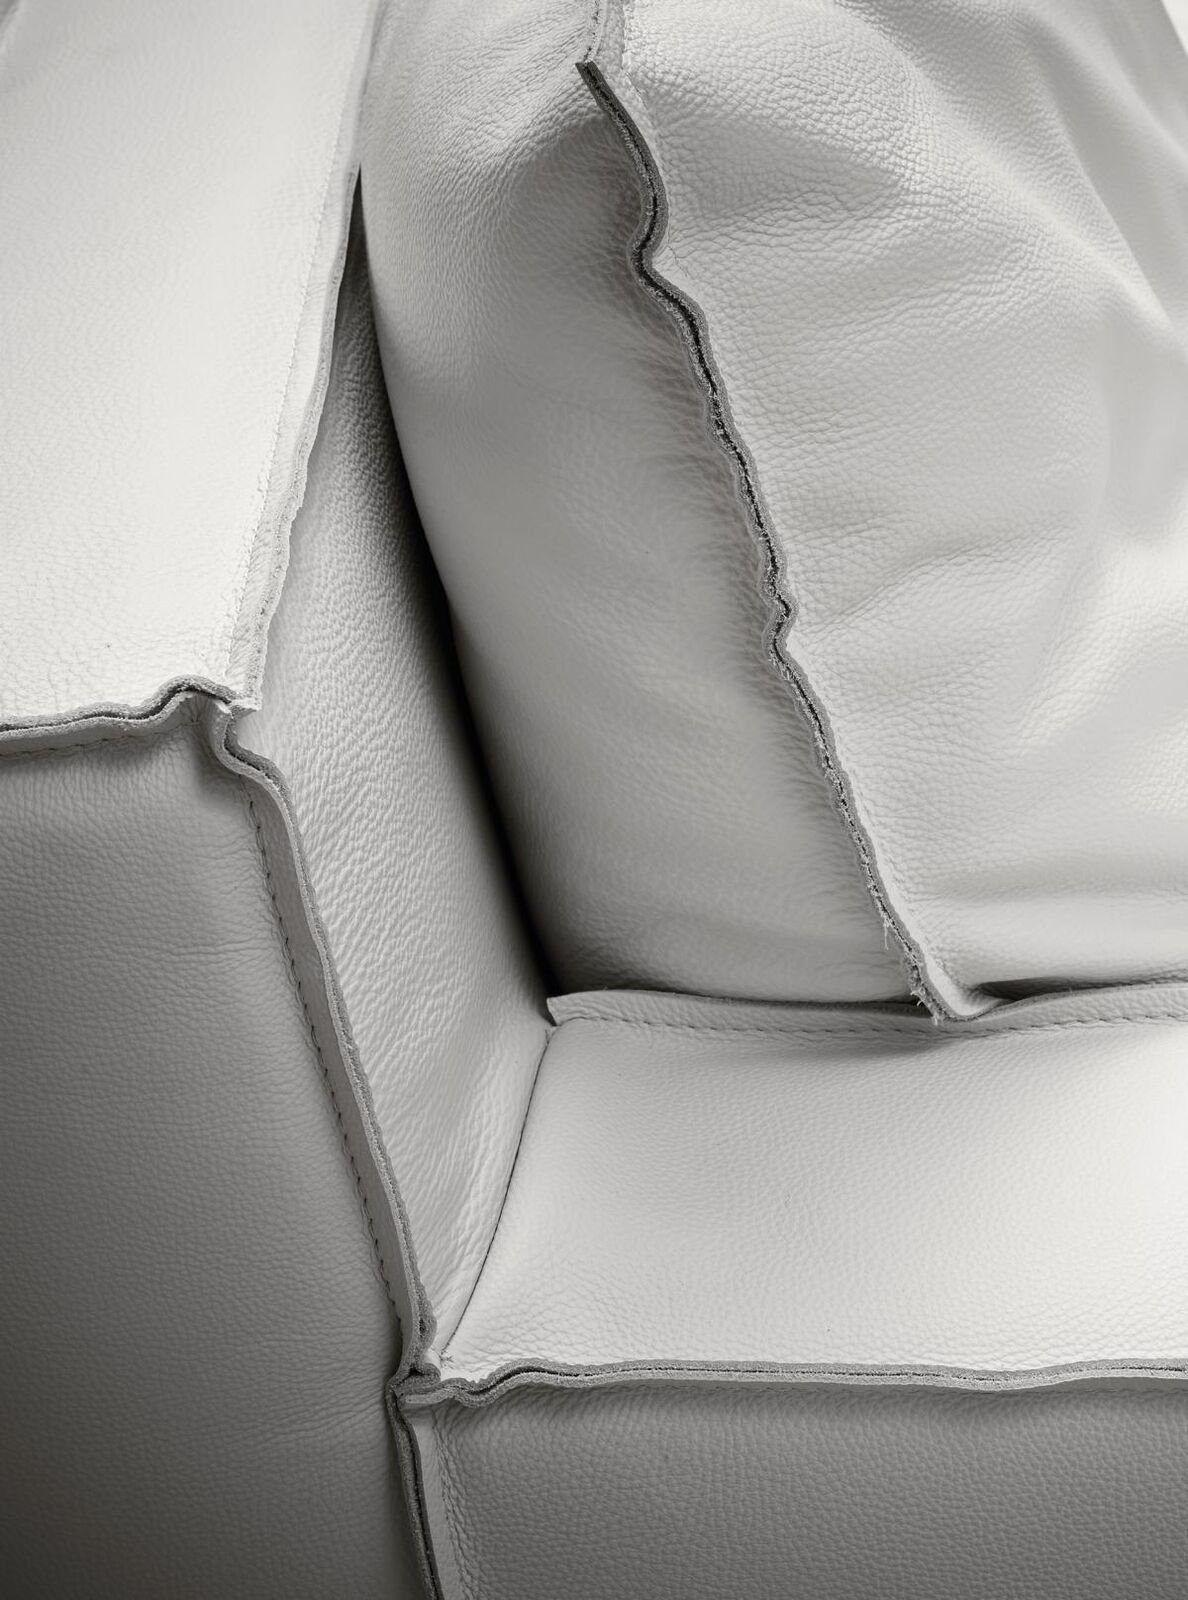 JVmoebel Sessel Design Sessel Lounge Grün Luxus Relax Weiß Einsitzer Möbel Polster Möbel